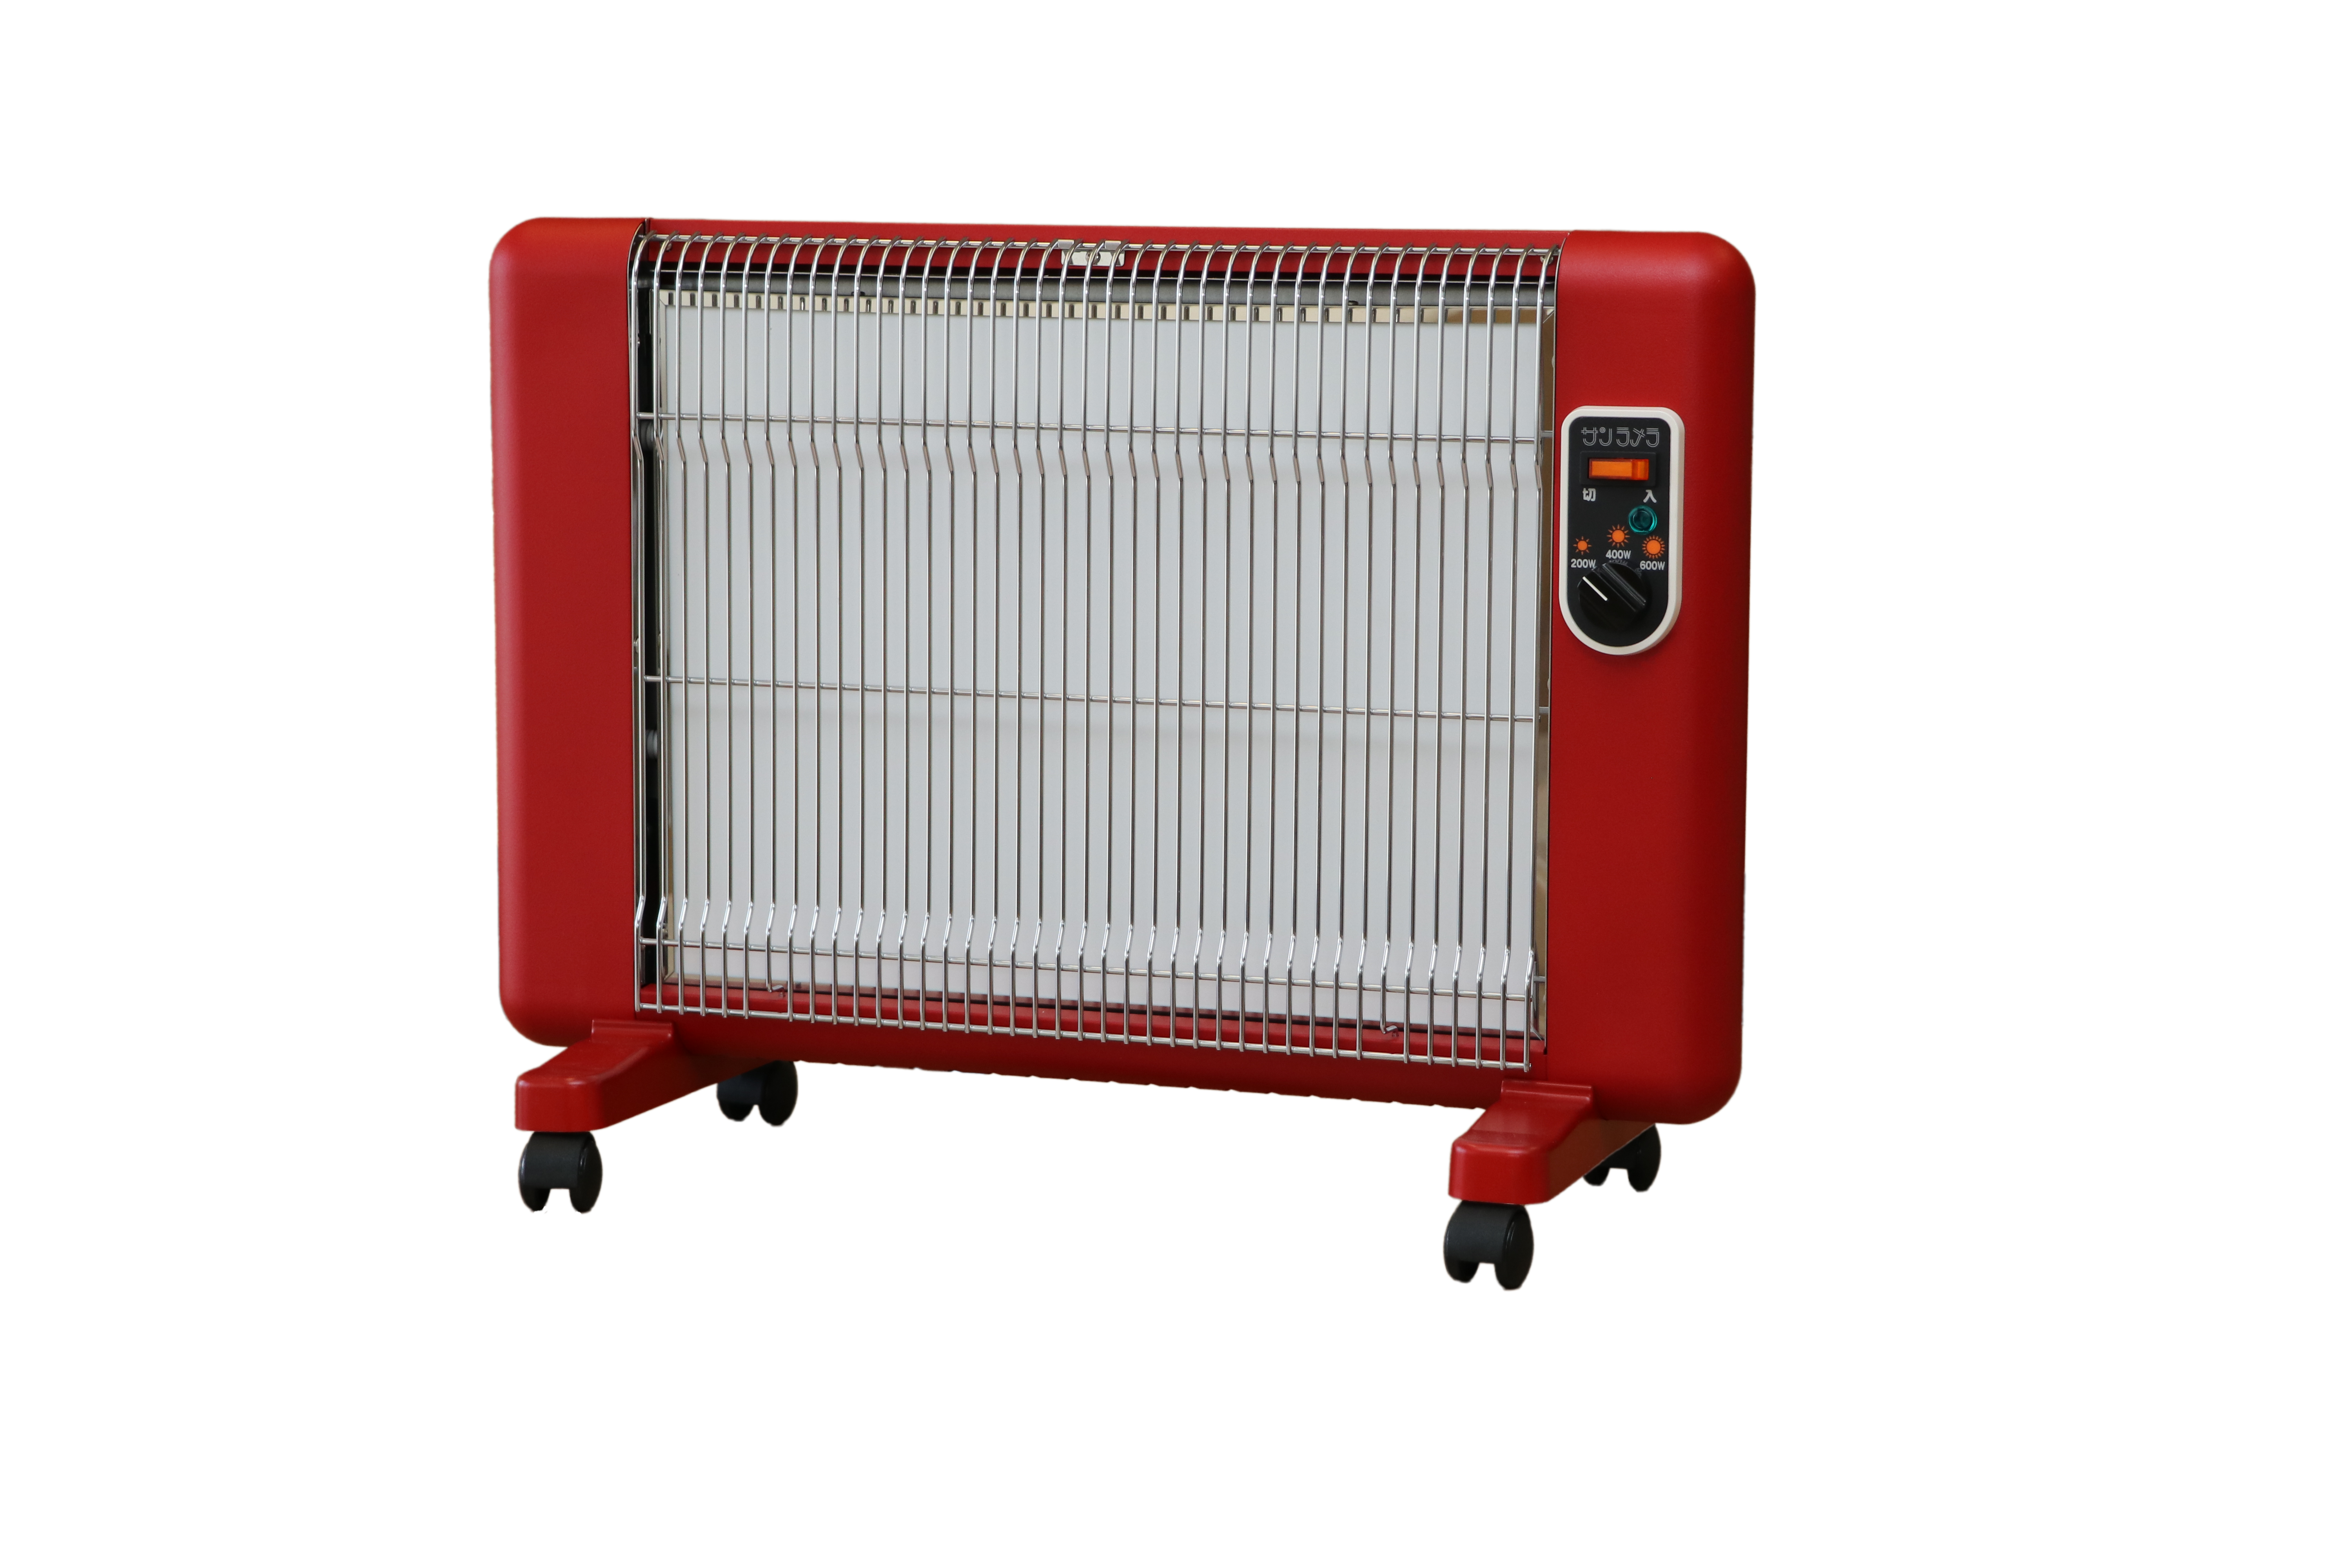 【215】遠赤外線輻射式暖房器サンラメラ 600w型 Fレッド